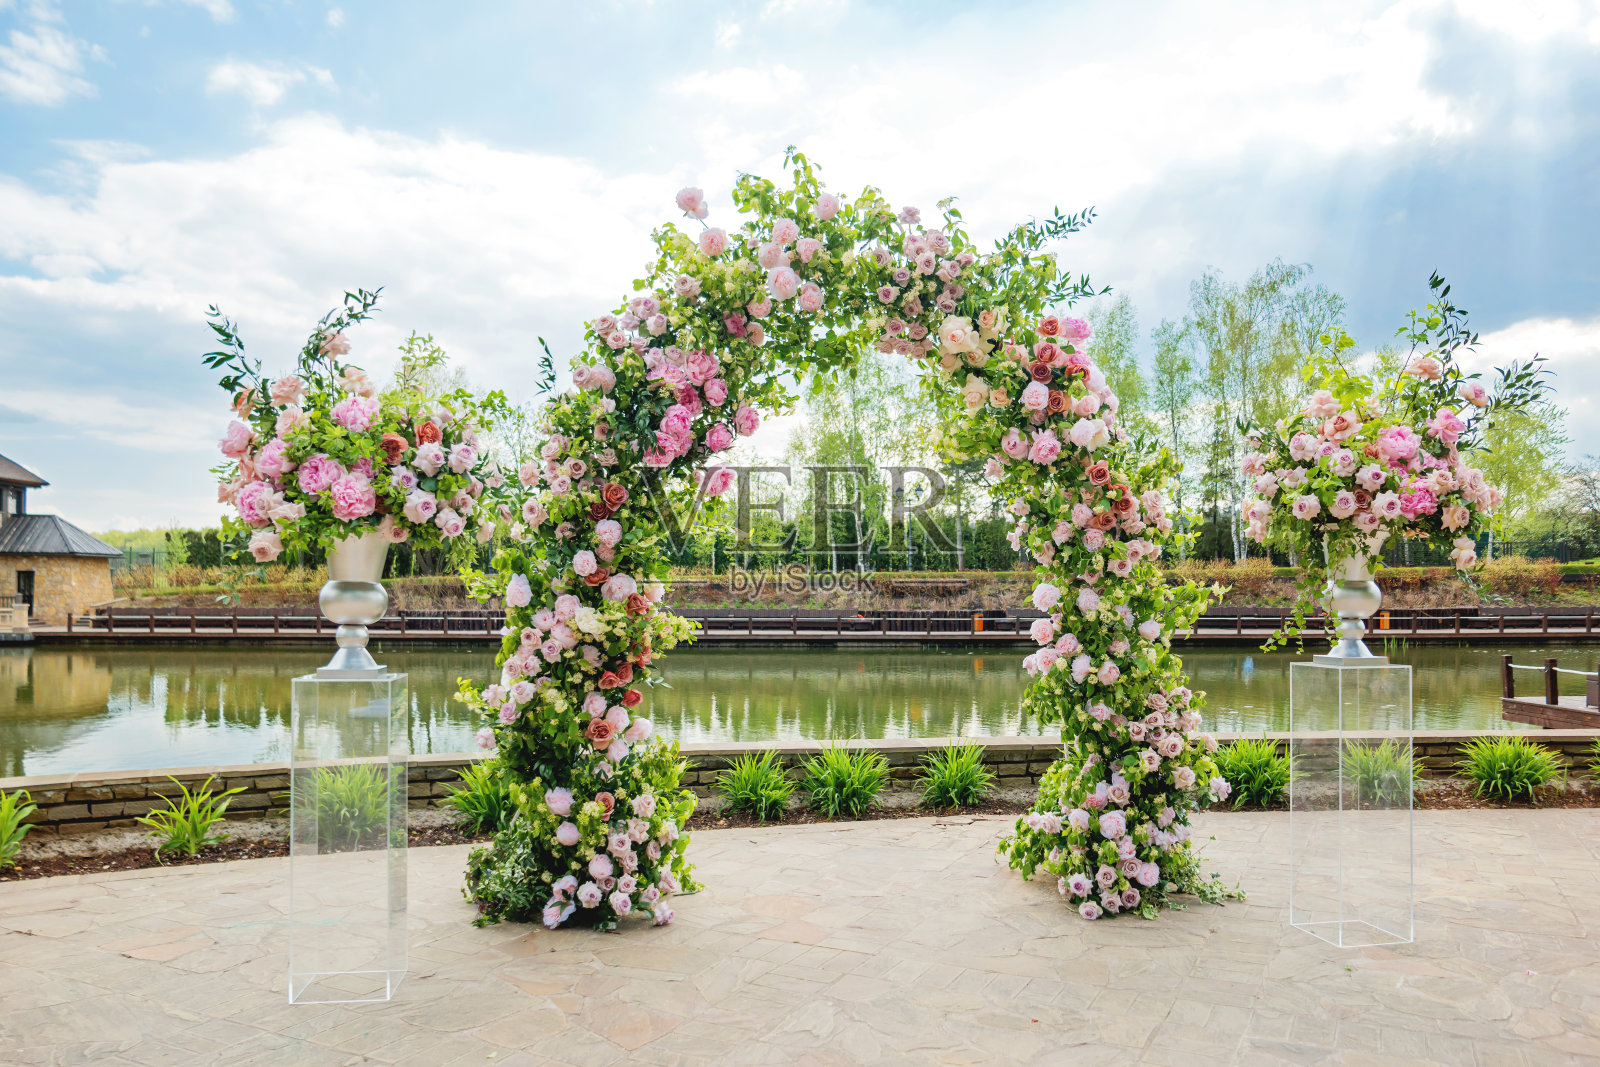 婚礼上美丽的花拱门。装着粉红玫瑰和牡丹的花瓶。婚礼安排在户外公园附近的池塘。照片摄影图片